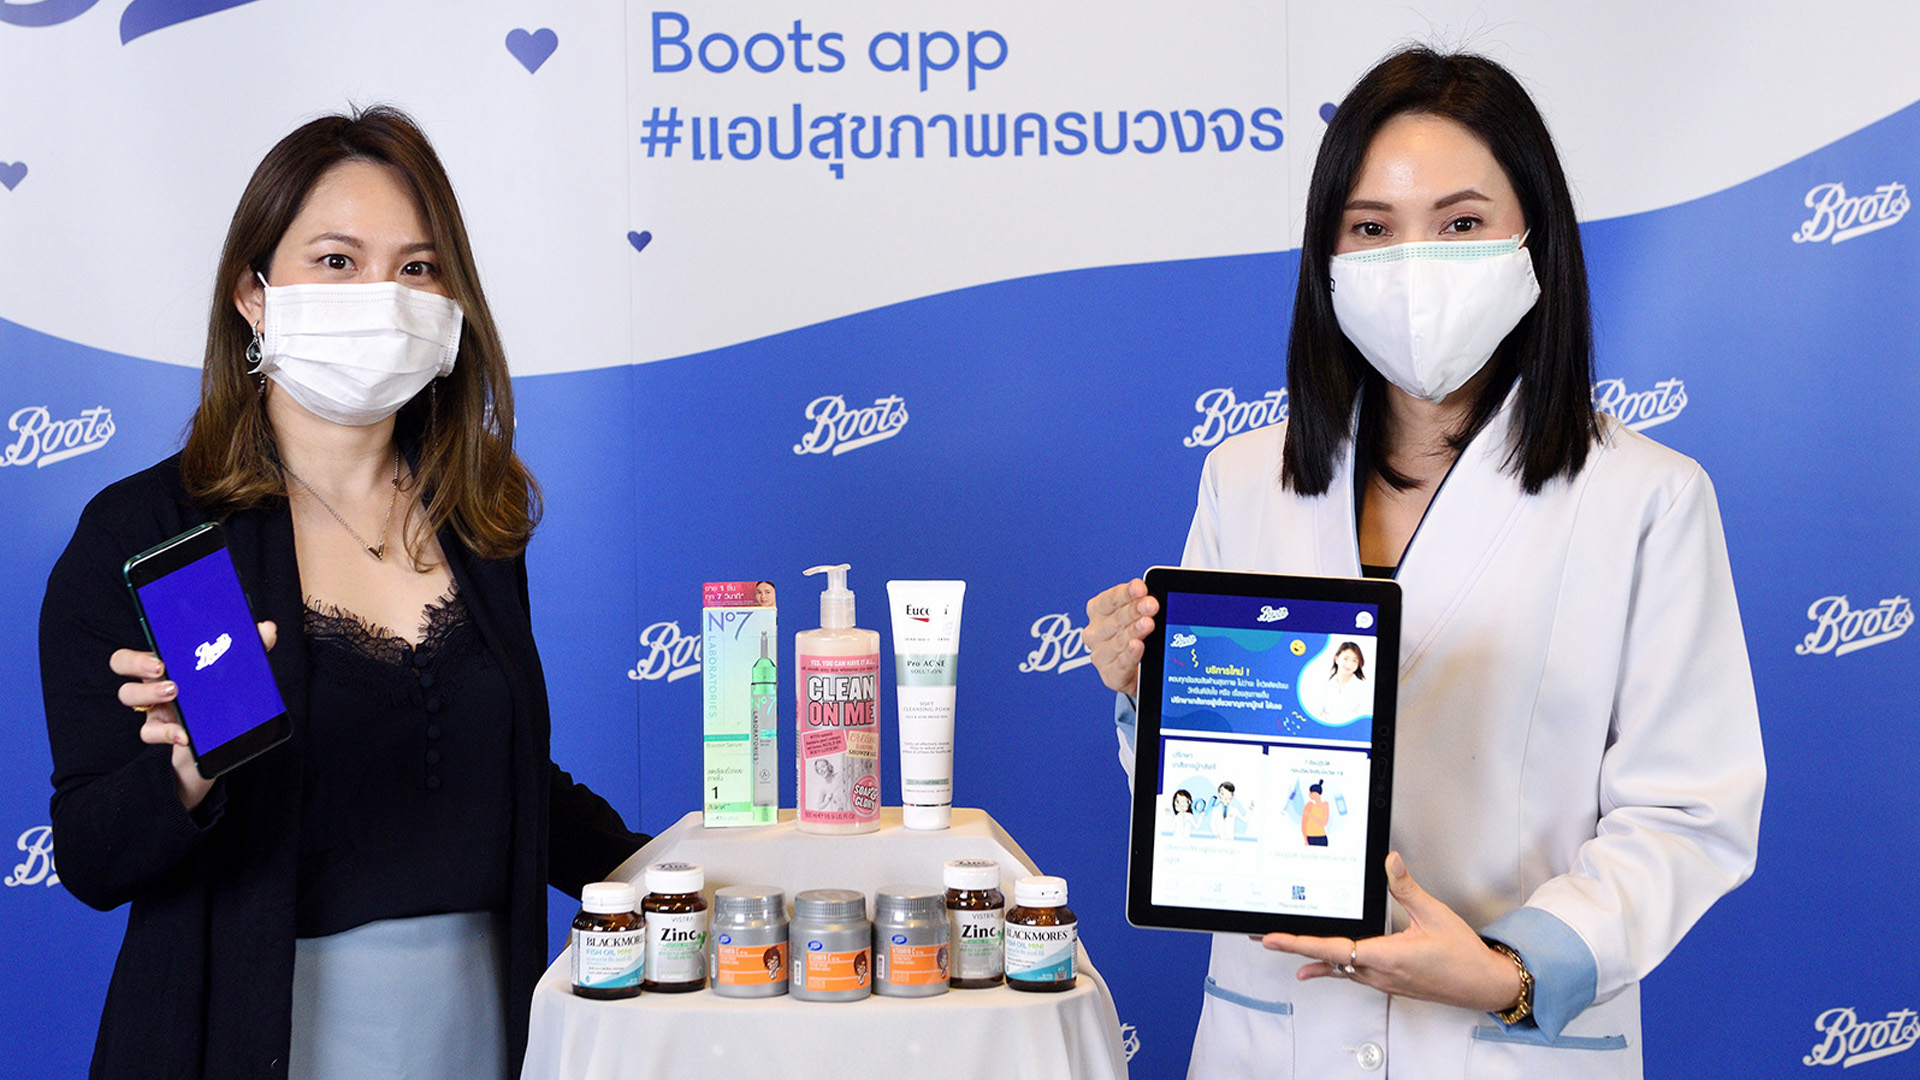 บู๊ทส์ส่ง “Boots App” แอปสุขภาพครบวงจร ยกระดับการดูแลสุขภาพของคนไทยให้ดียิ่งขึ้น ฝ่าวิกฤต COVID-19